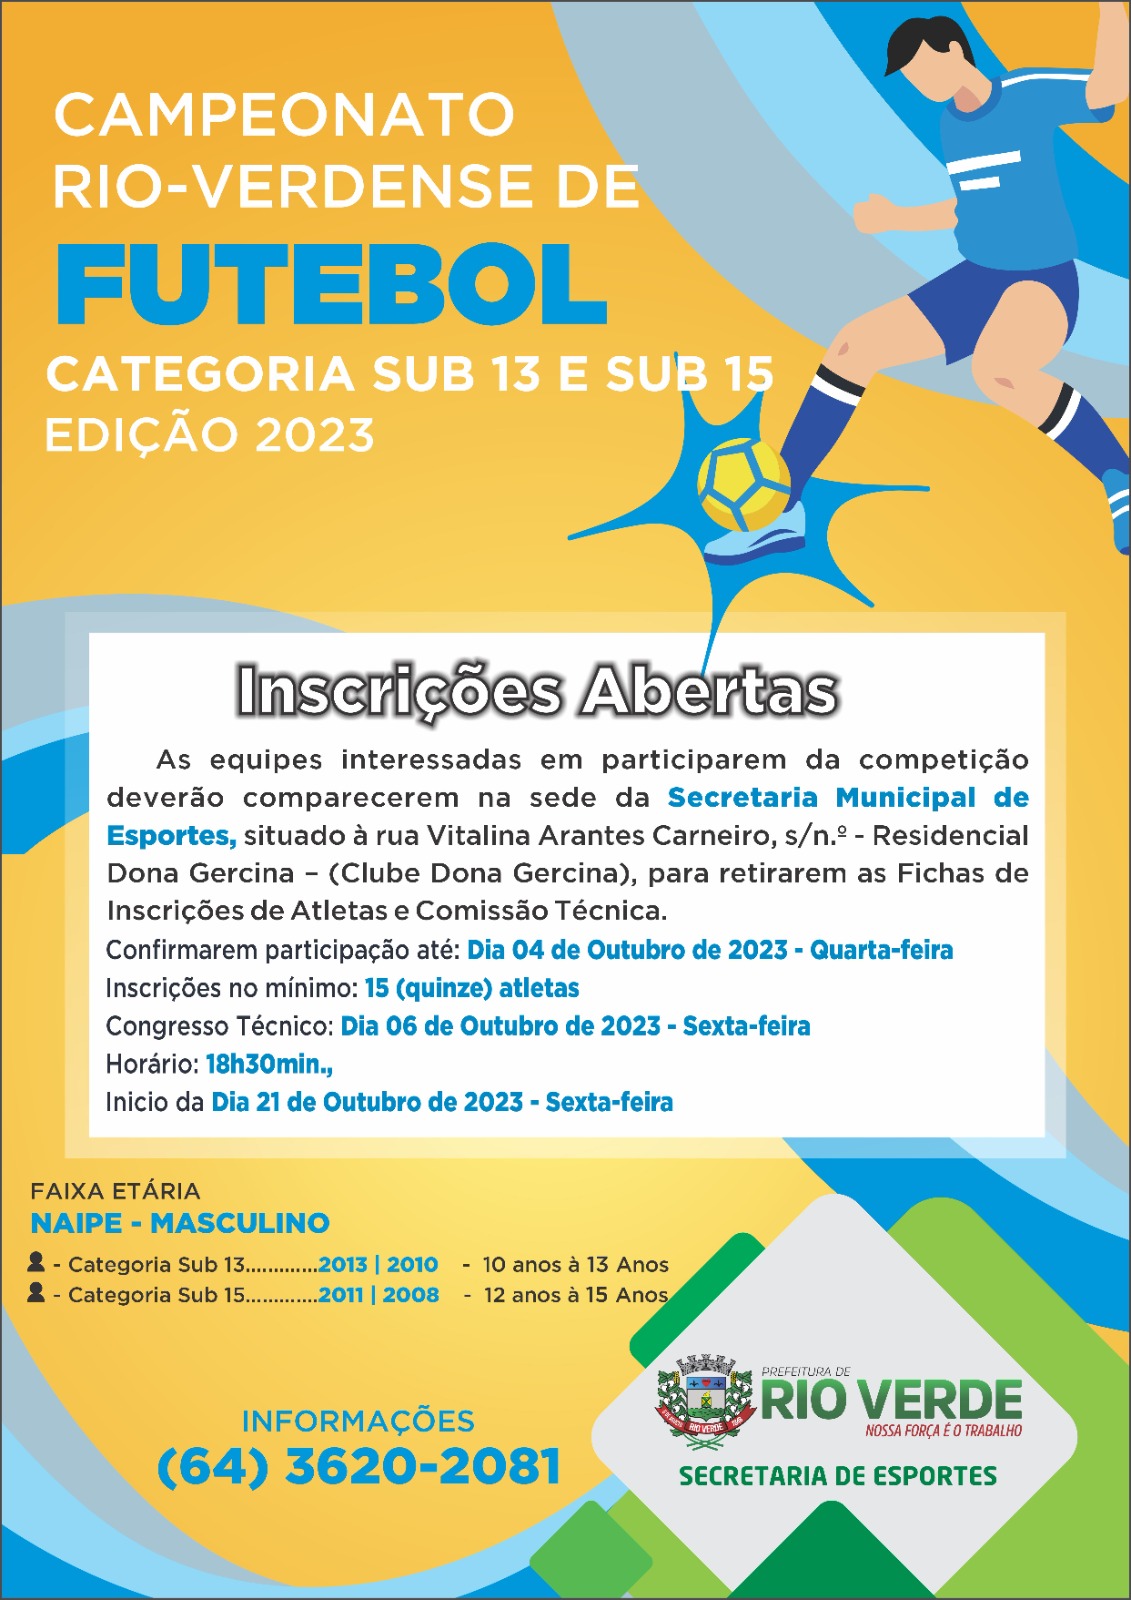 Jogos do Campeonato de Futebol Sub 12 - Prefeitura Municipal de Rio Verde